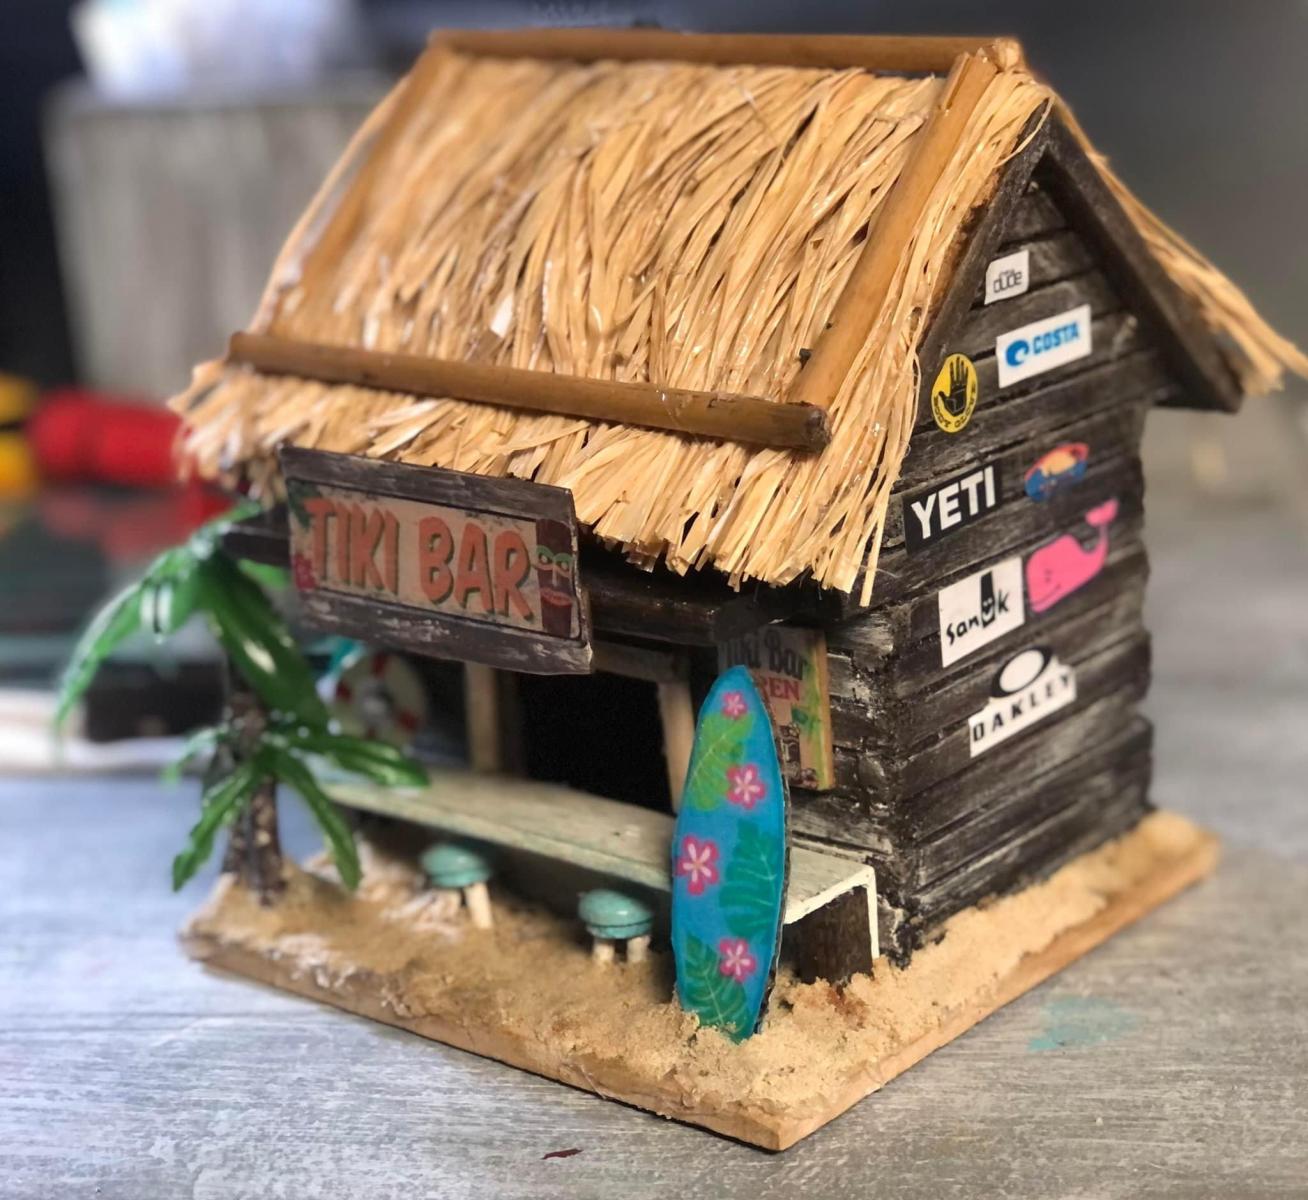 Repurposed bird house into Tiki Bar Birdhouse